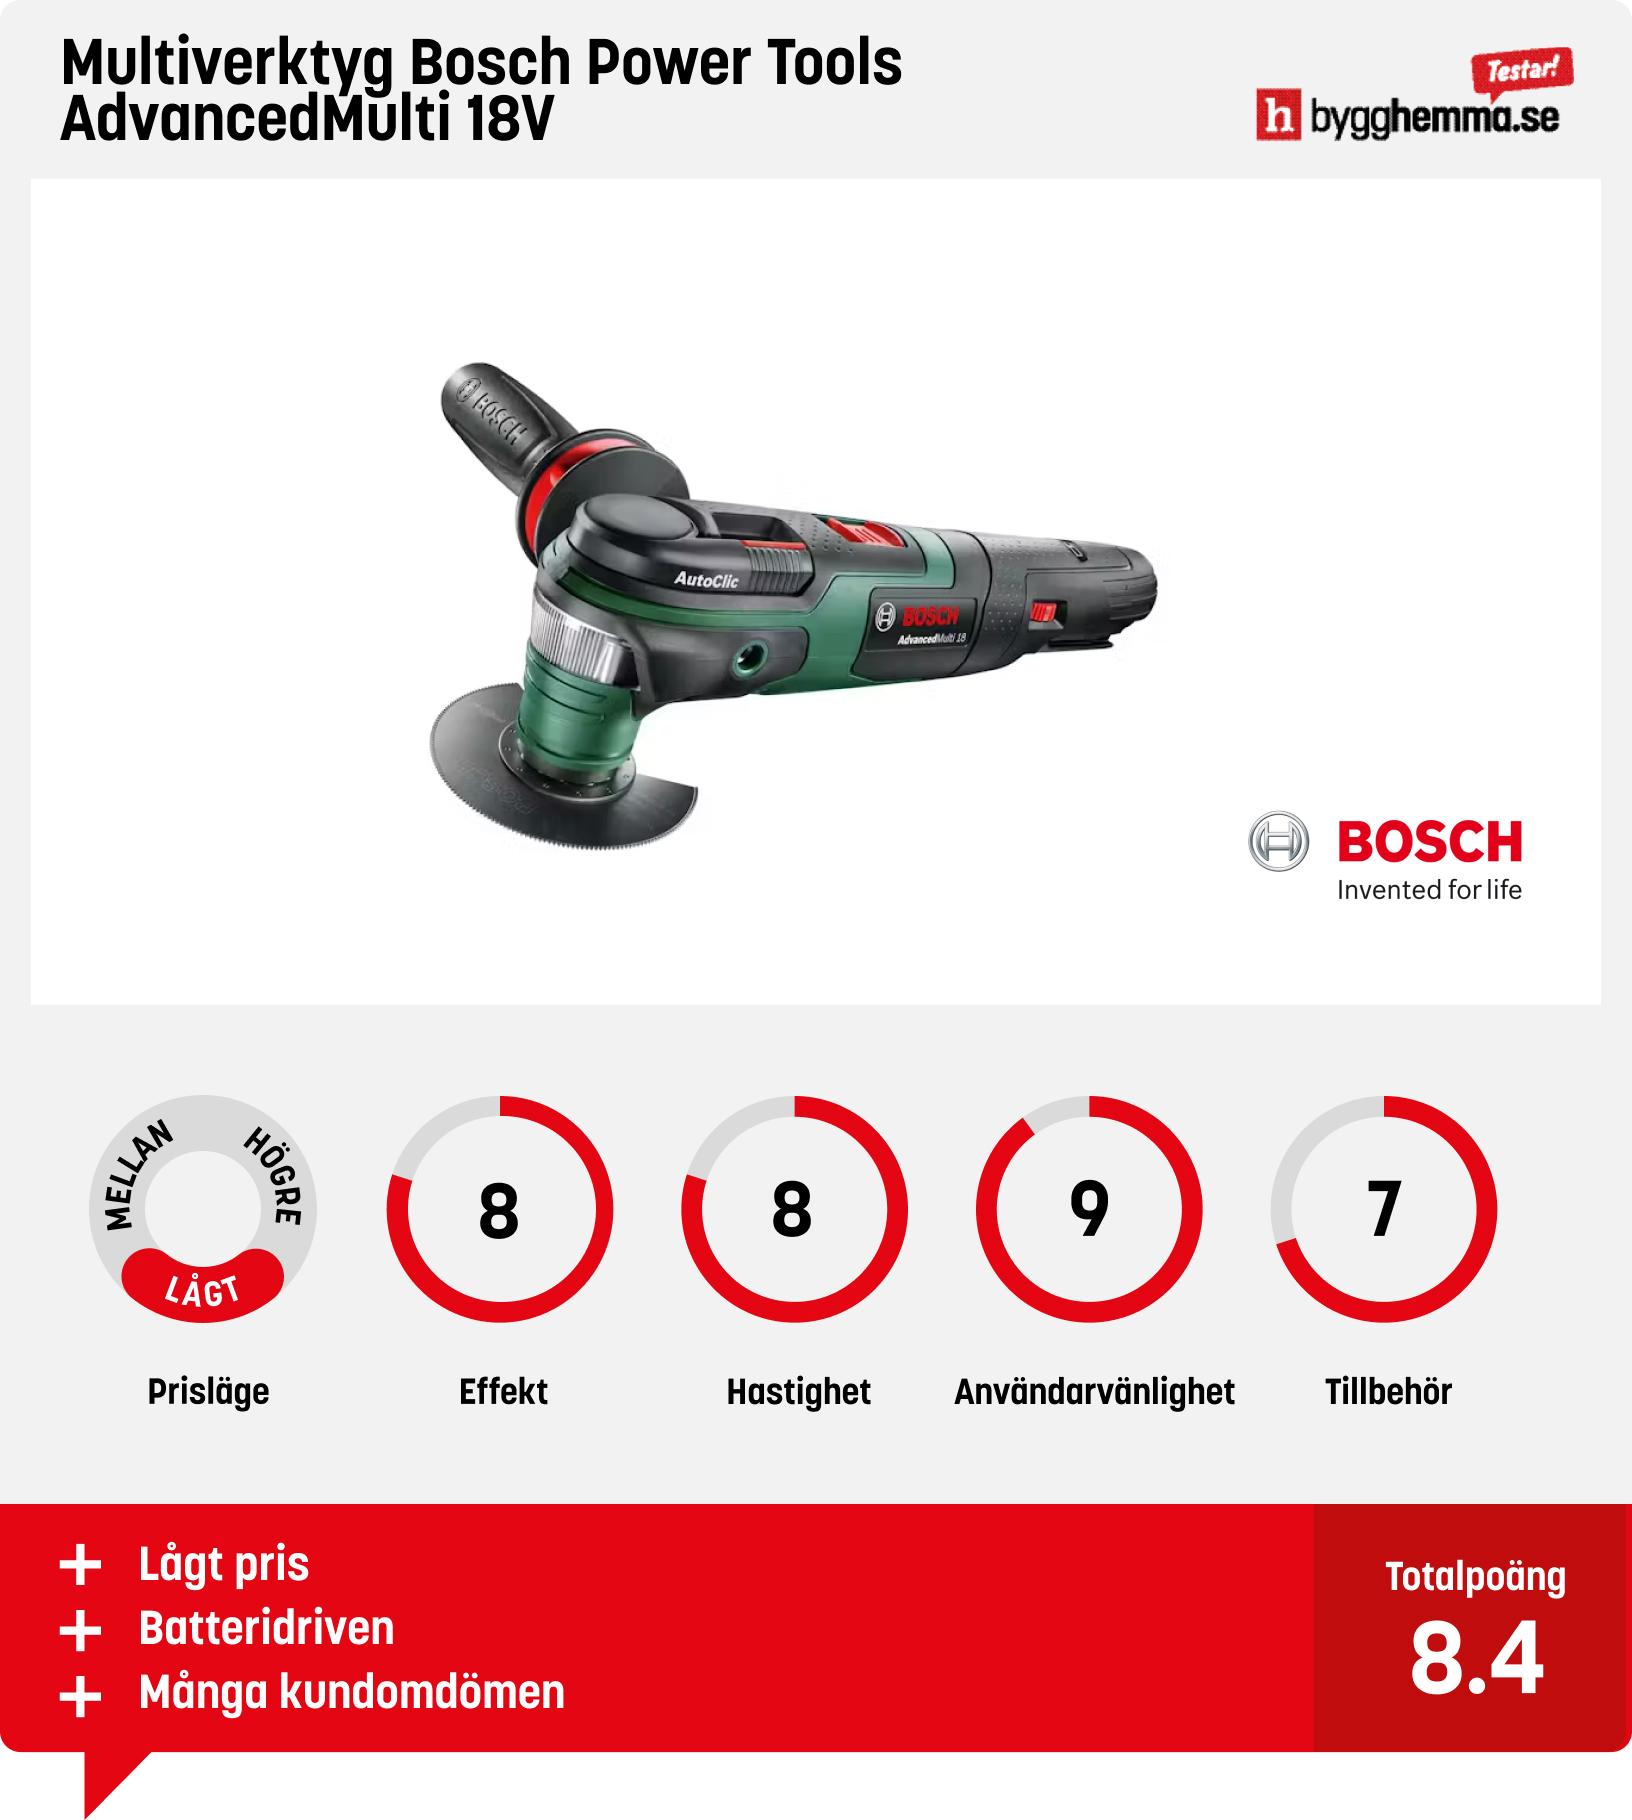 Multiverktyg test - Multiverktyg Bosch Power Tools AdvancedMulti 18V